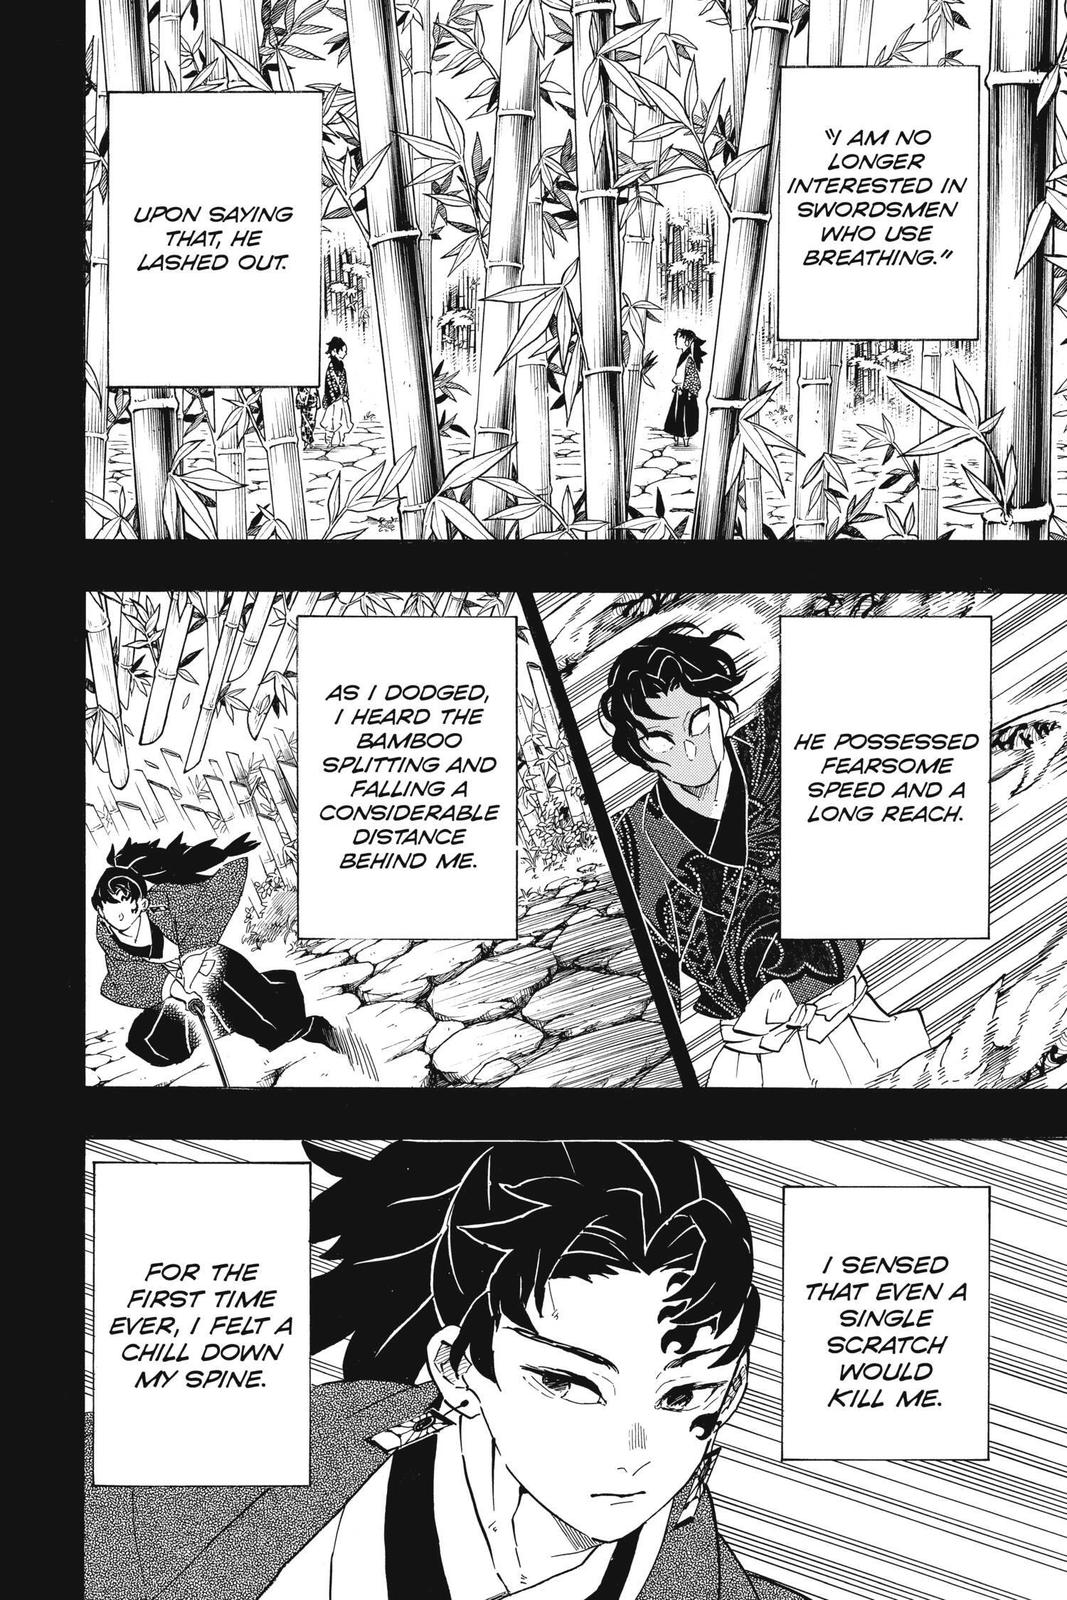 Demon Slayer Manga Manga Chapter - 187 - image 2